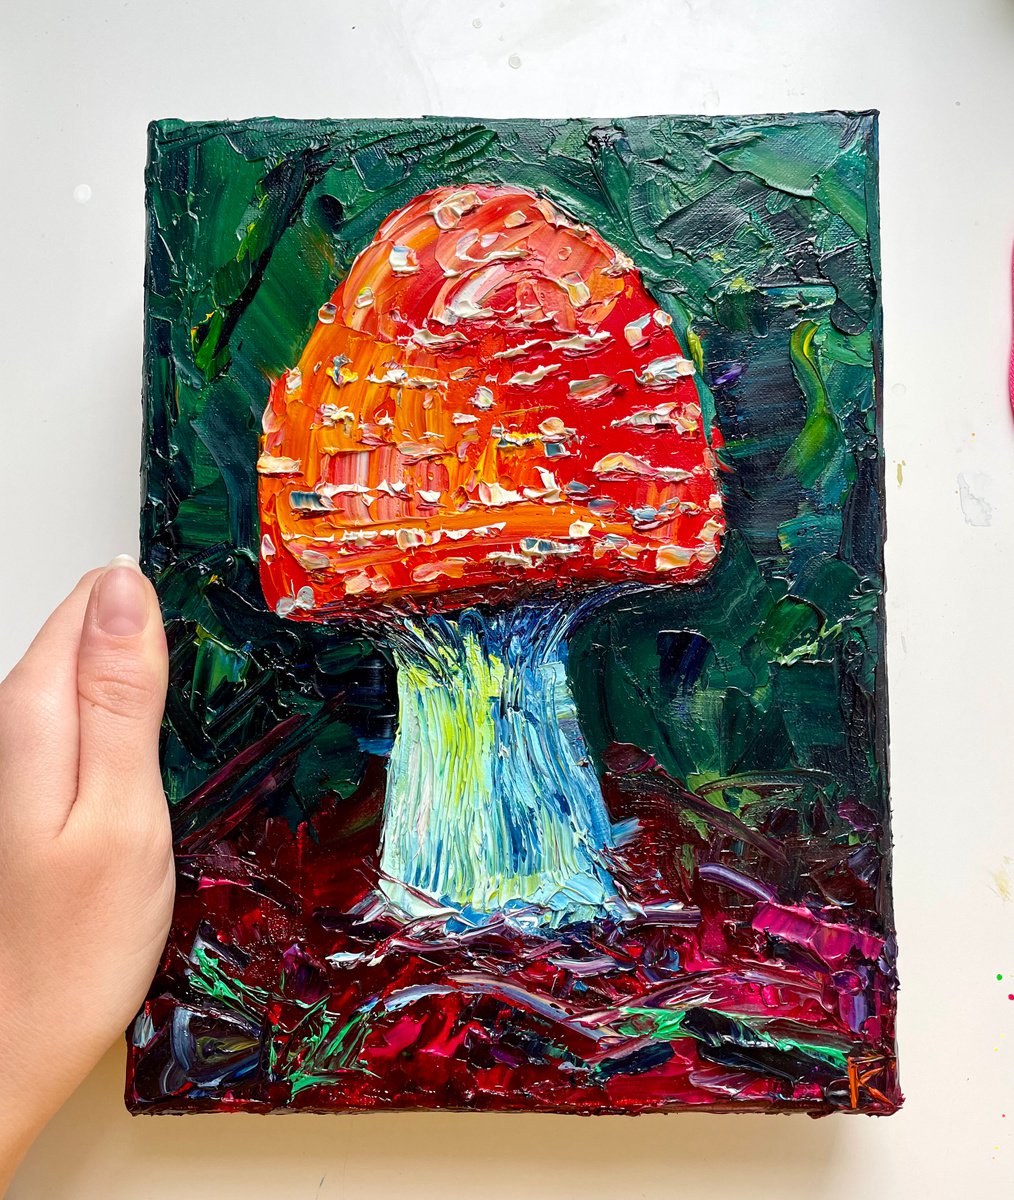 Mushroom Original Oil Painting on Canvas, Amanita Textured Wall Art, Fungi Artwork, Cottag... by Kate Grishakova